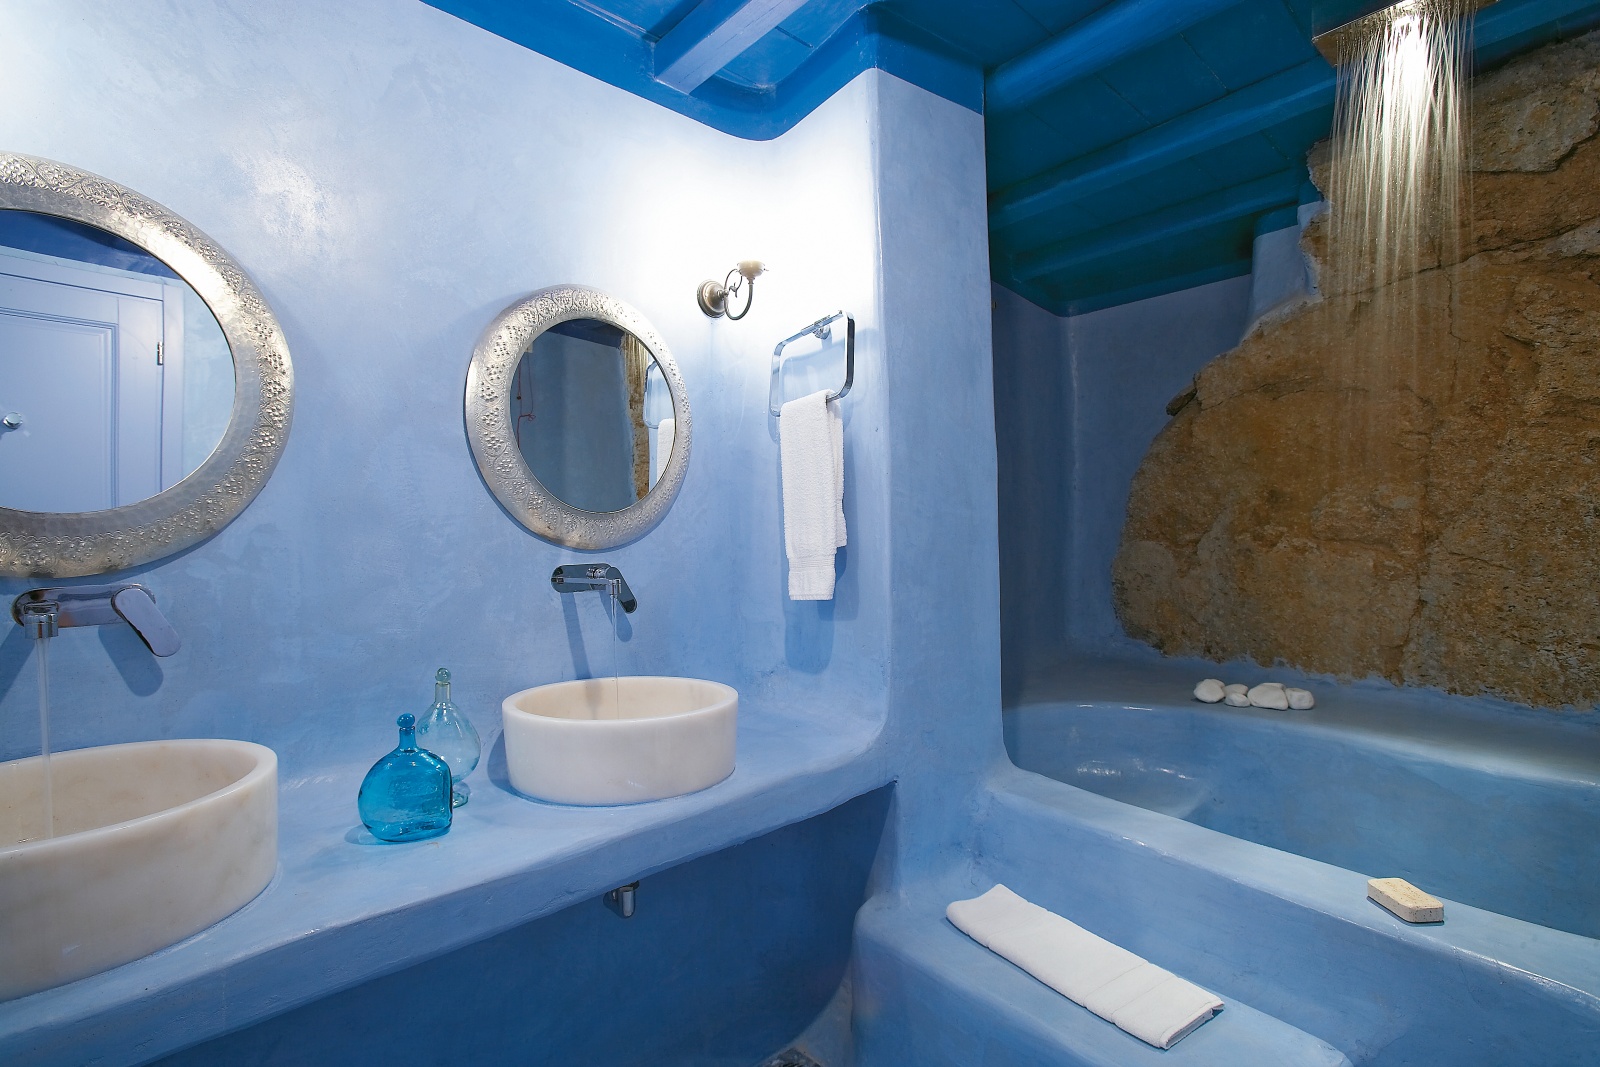 аксессуары для ванной комнаты в греческом стиле